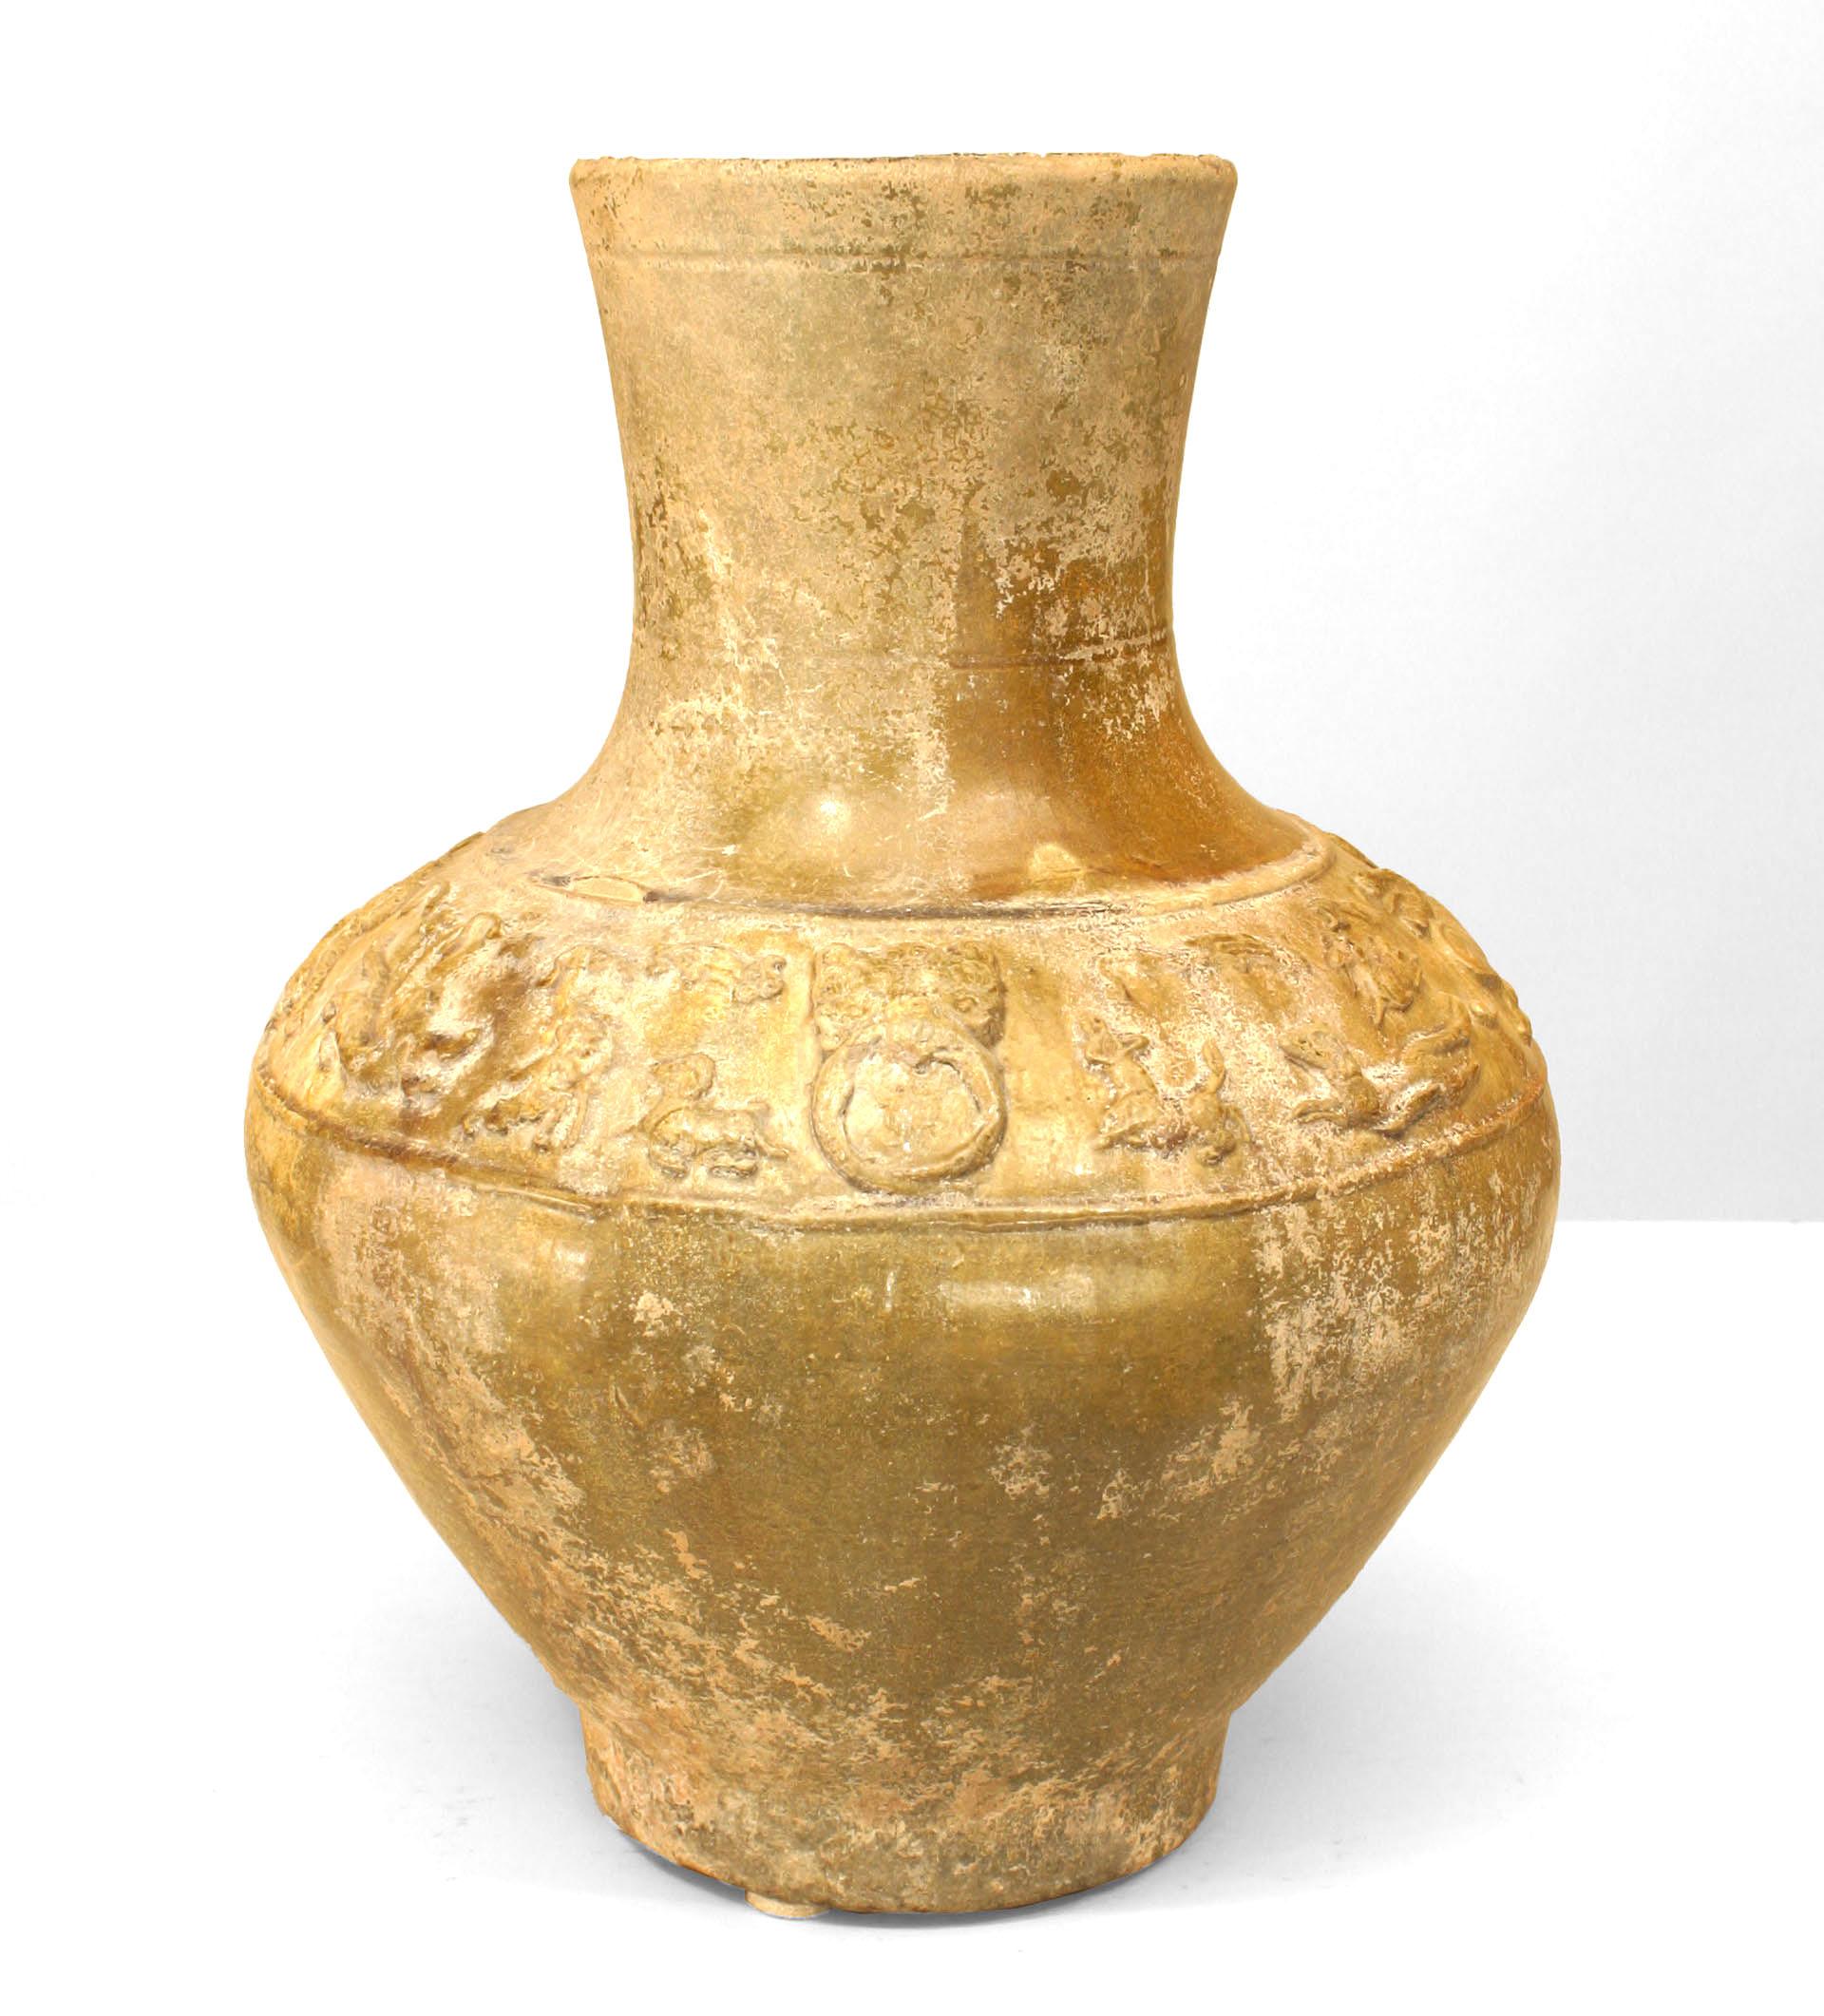 Vase (jarre) asiatique chinois (dynastie Han 206 av. J.-C. - 220 apr. J.-C.) en poterie à glaçure ambrée avec un groupe d'animaux en relief sur une base moderne de 2,5 cm de haut.
  